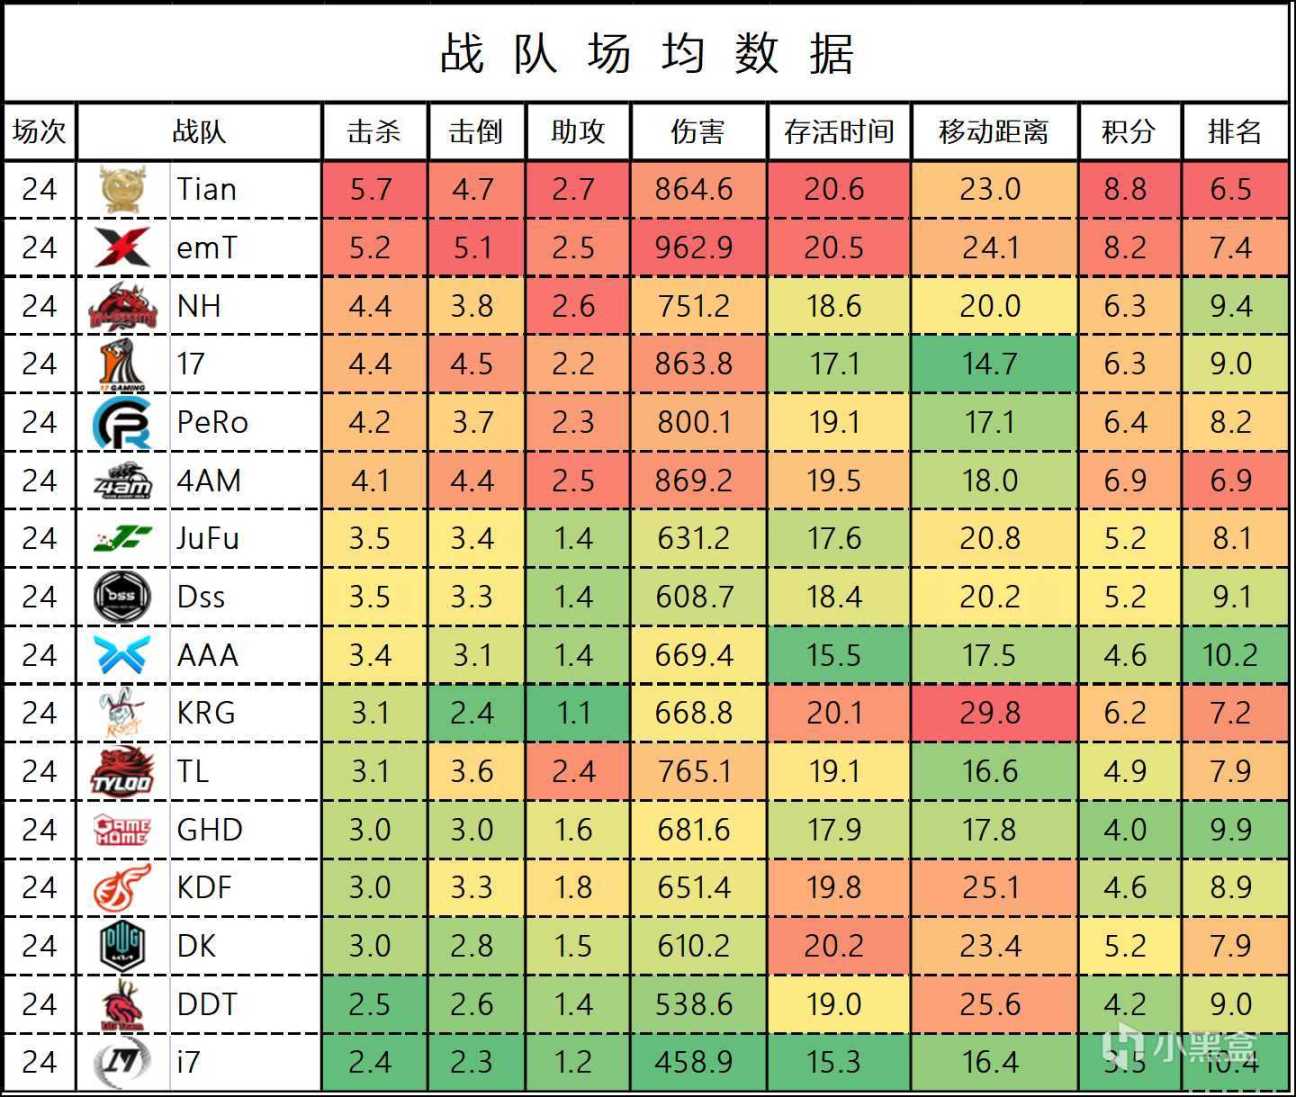 【数据流】BPC决赛数据，Tianba全程领跑夺冠！-第5张